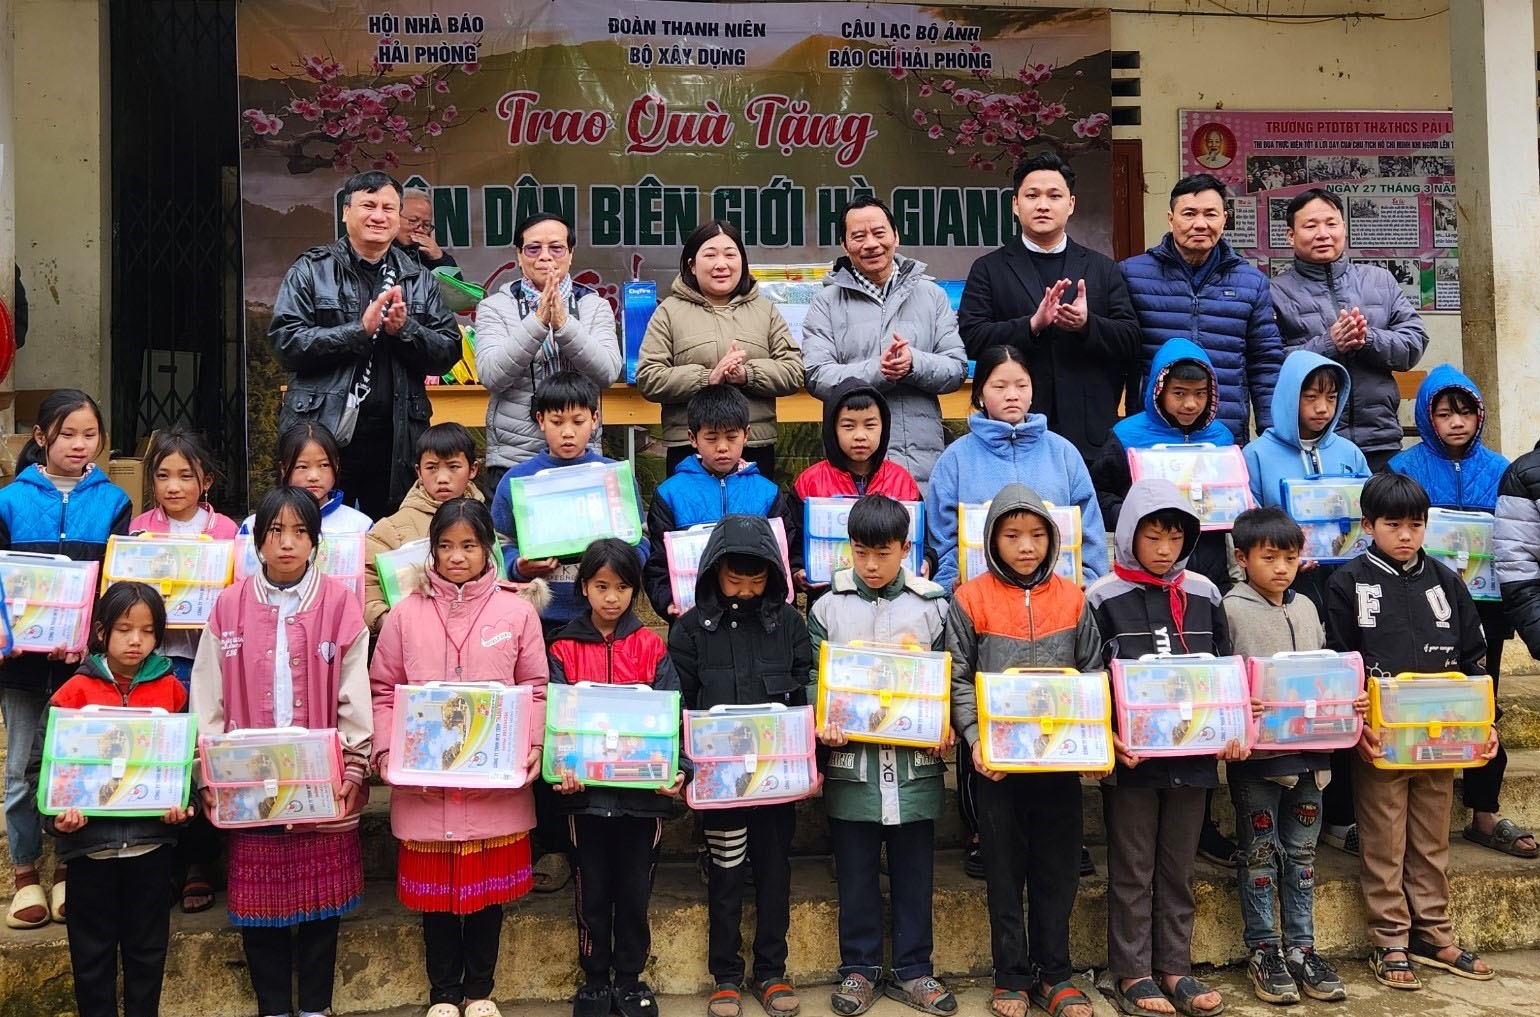 Đoàn Thanh niên Bộ Xây dựng trao tặng quà xuân cho học sinh vùng cao Hà Giang